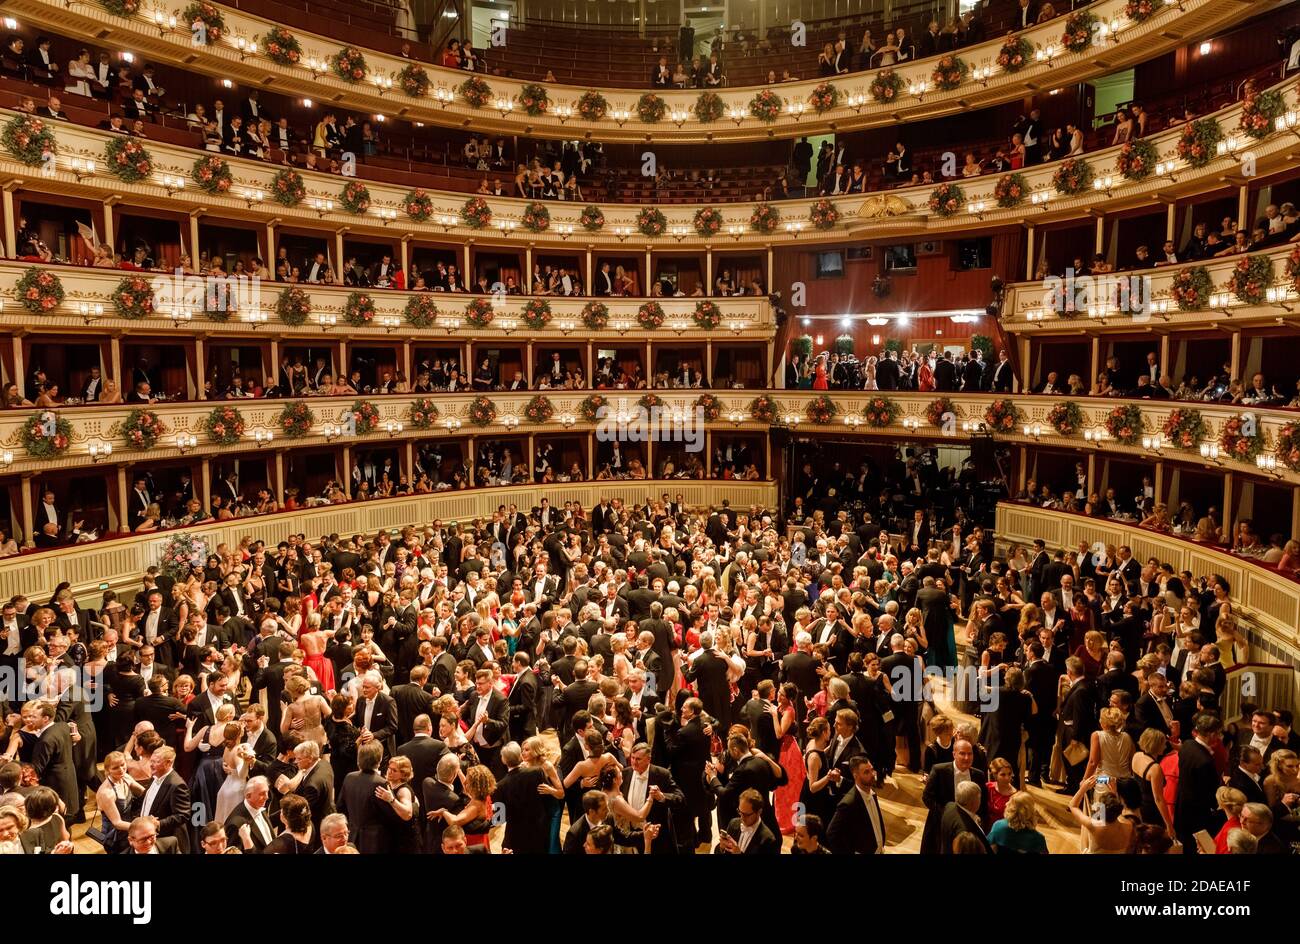 VIENNE, AUTRICHE - 09 février : le bal de l'Opéra de Vienne est un  événement annuel de la société autrichienne qui a lieu dans le bâtiment de l 'Opéra national de Vienne Photo